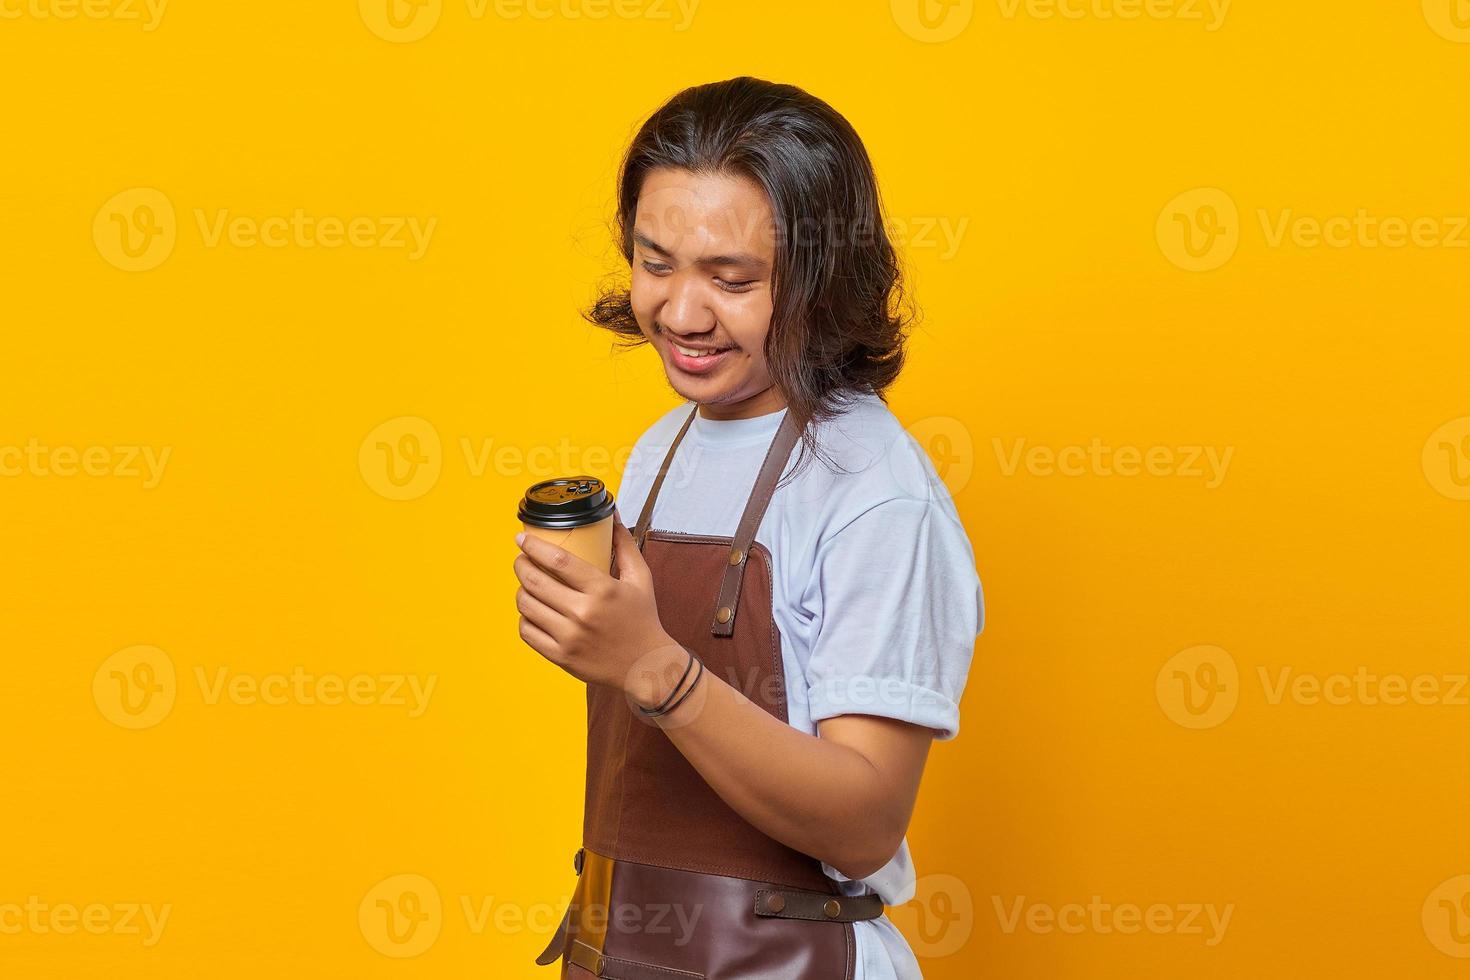 porträtt av stilig man som bär förkläde och tittar på en kopp kaffe som hålls isolerad på gul bakgrund foto